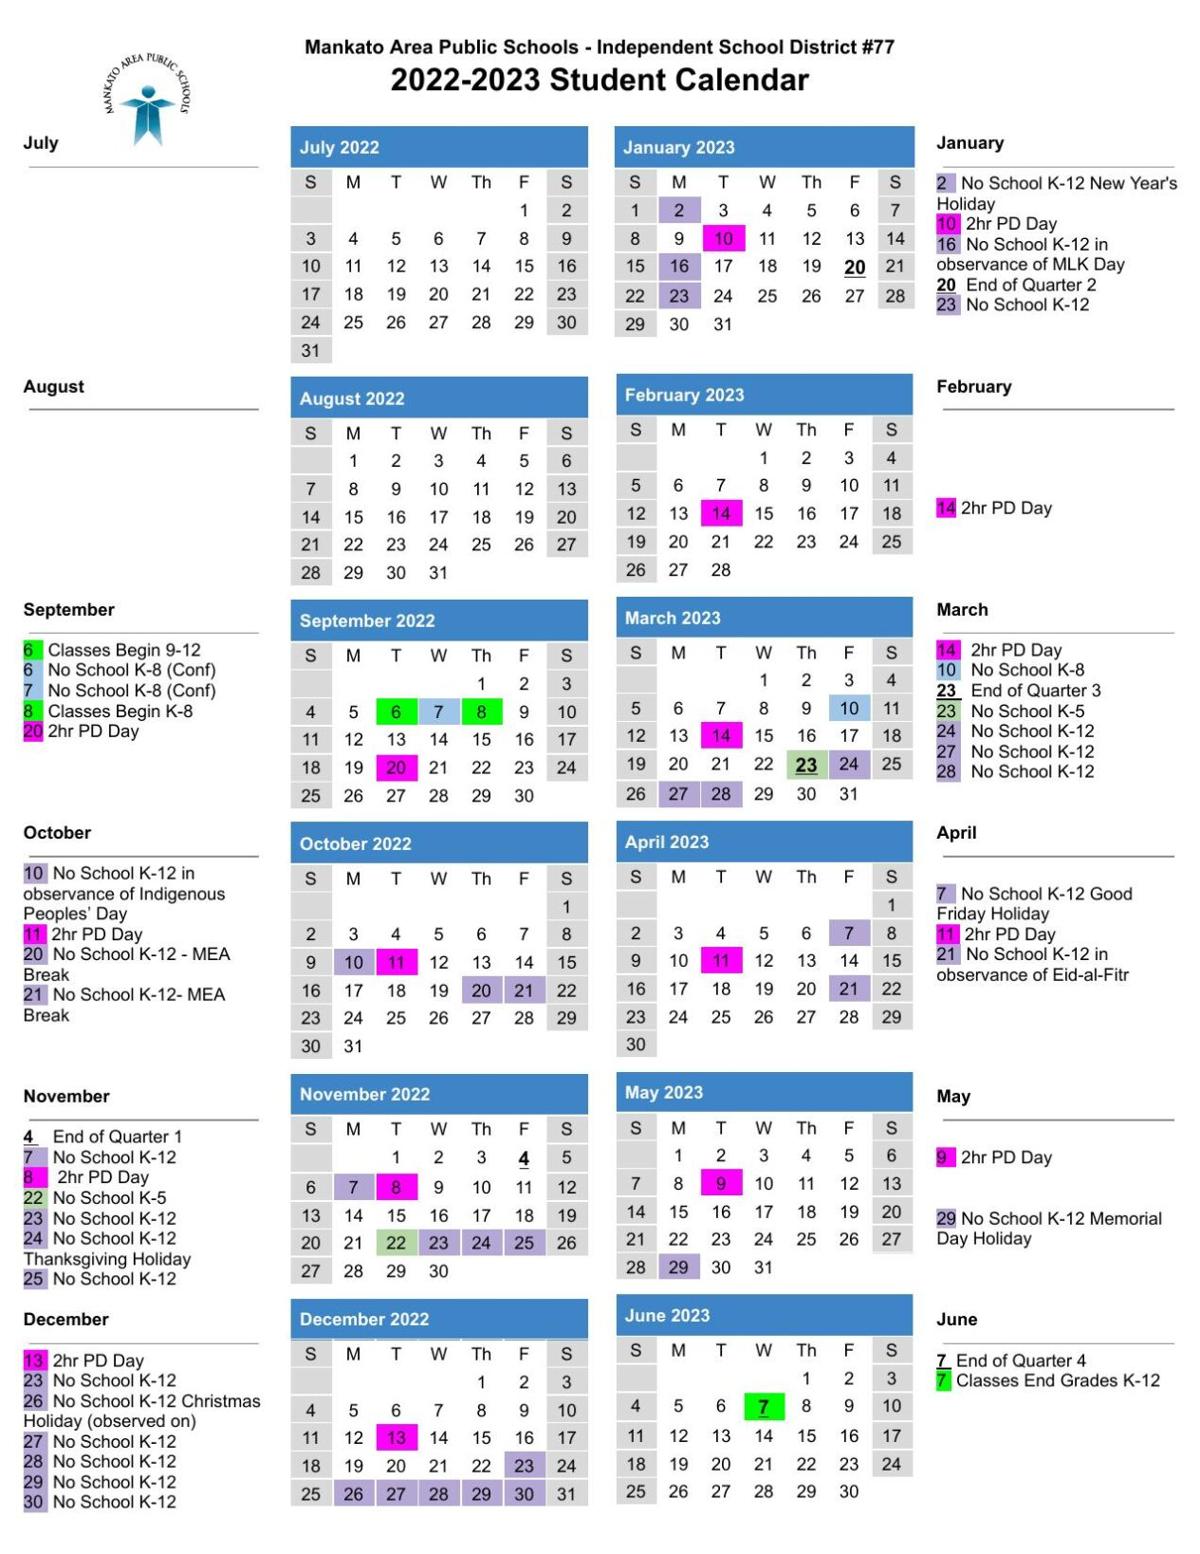 Msu Calendar 2022 2023 2022-2023 School Calendar | | Mankatofreepress.com